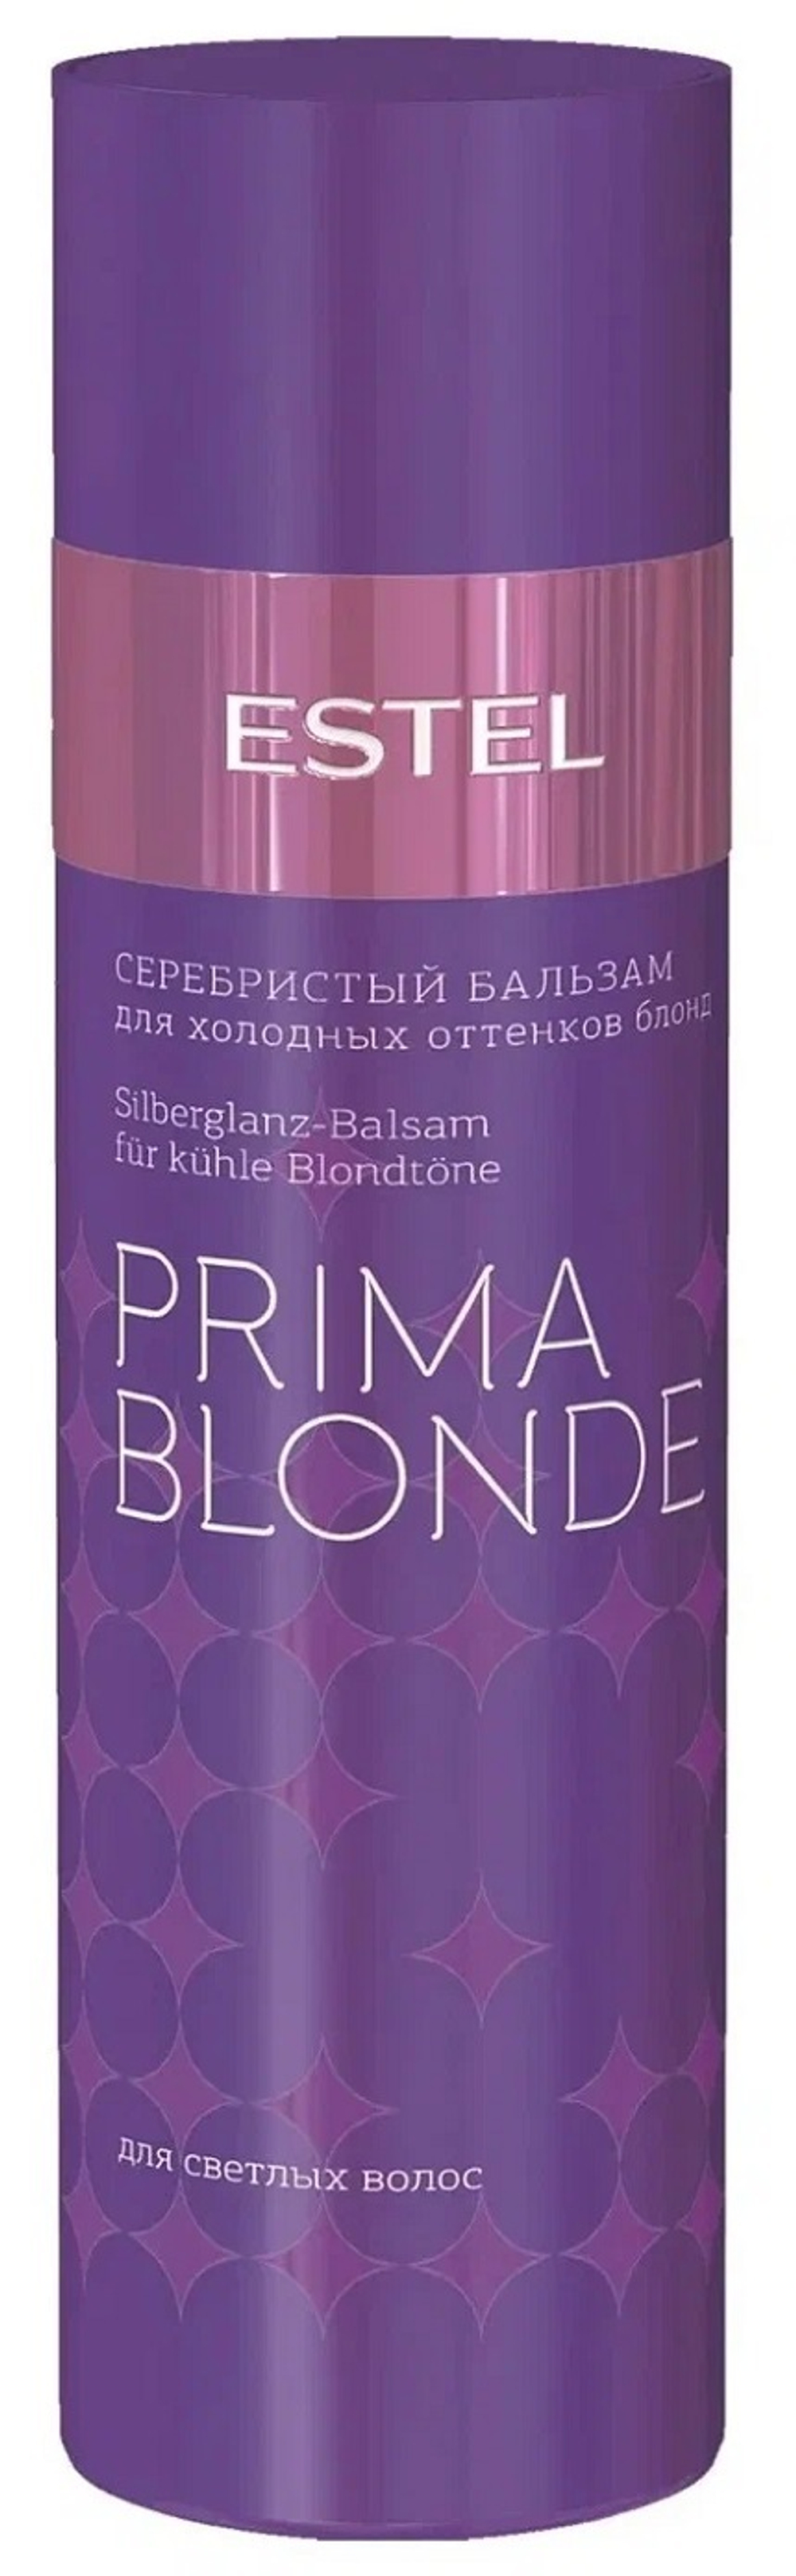 Серебристый бальзам для холодных оттенков блонд ESTEL PRIMA BLONDE, 200 мл